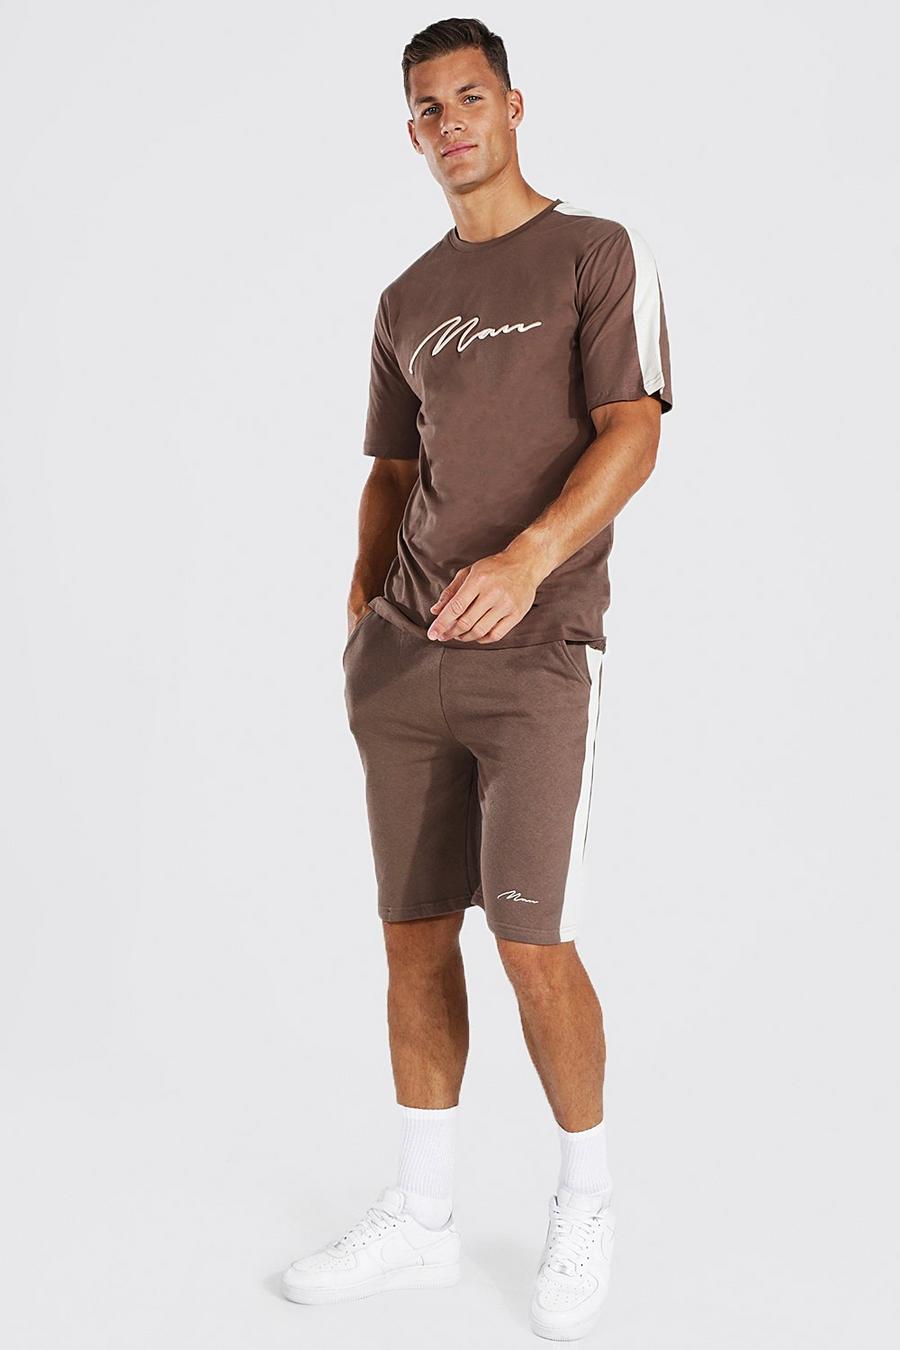 T-shirt coordinata Tall con pannello e logo Man ricamato in rilievo, Chocolate marrone image number 1